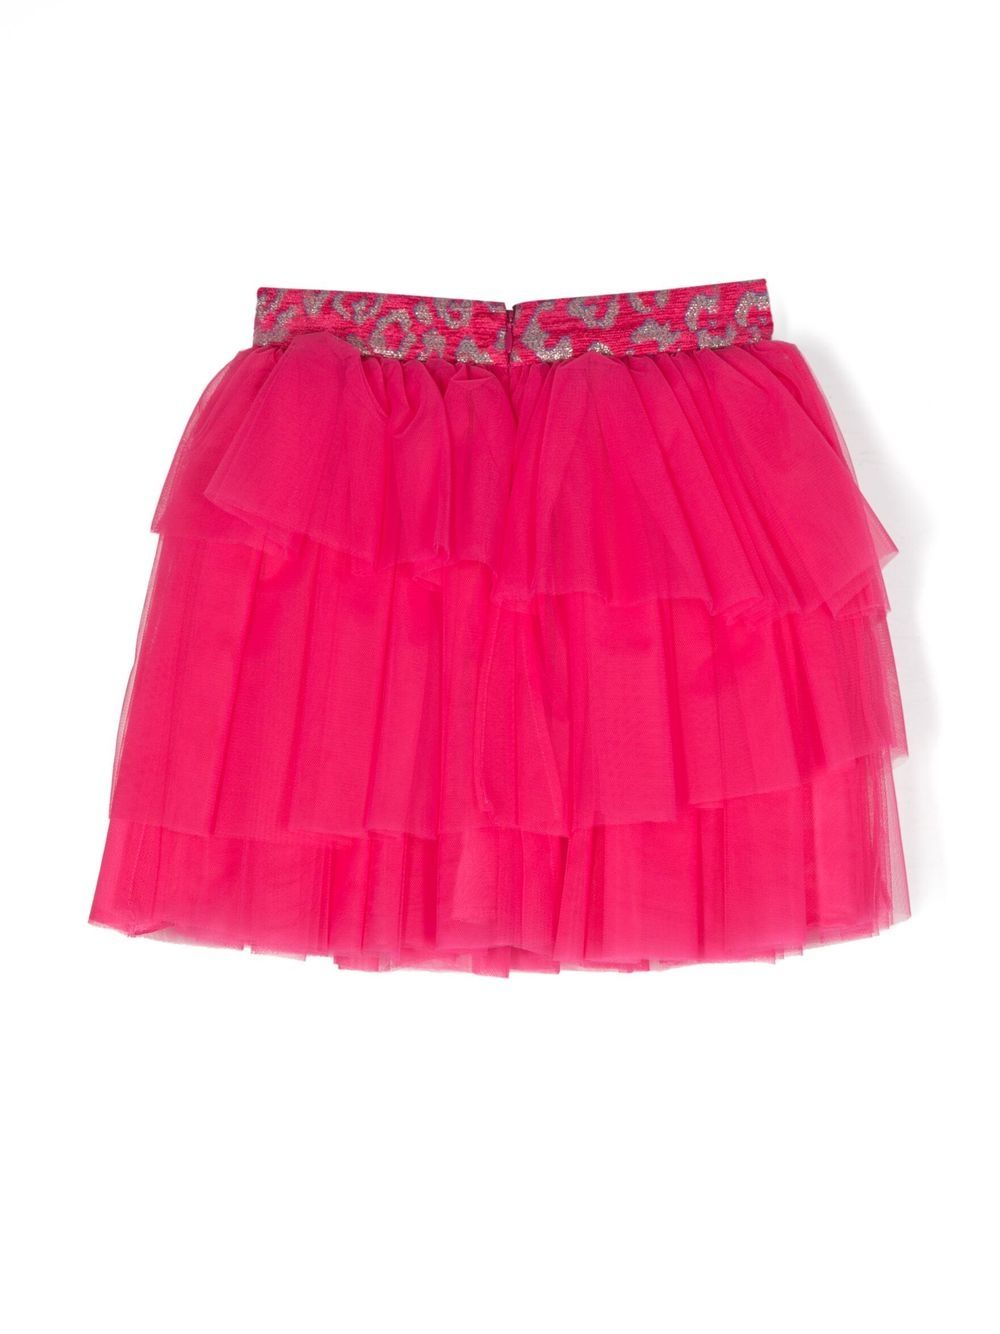 Fuchsia skirt with flounces